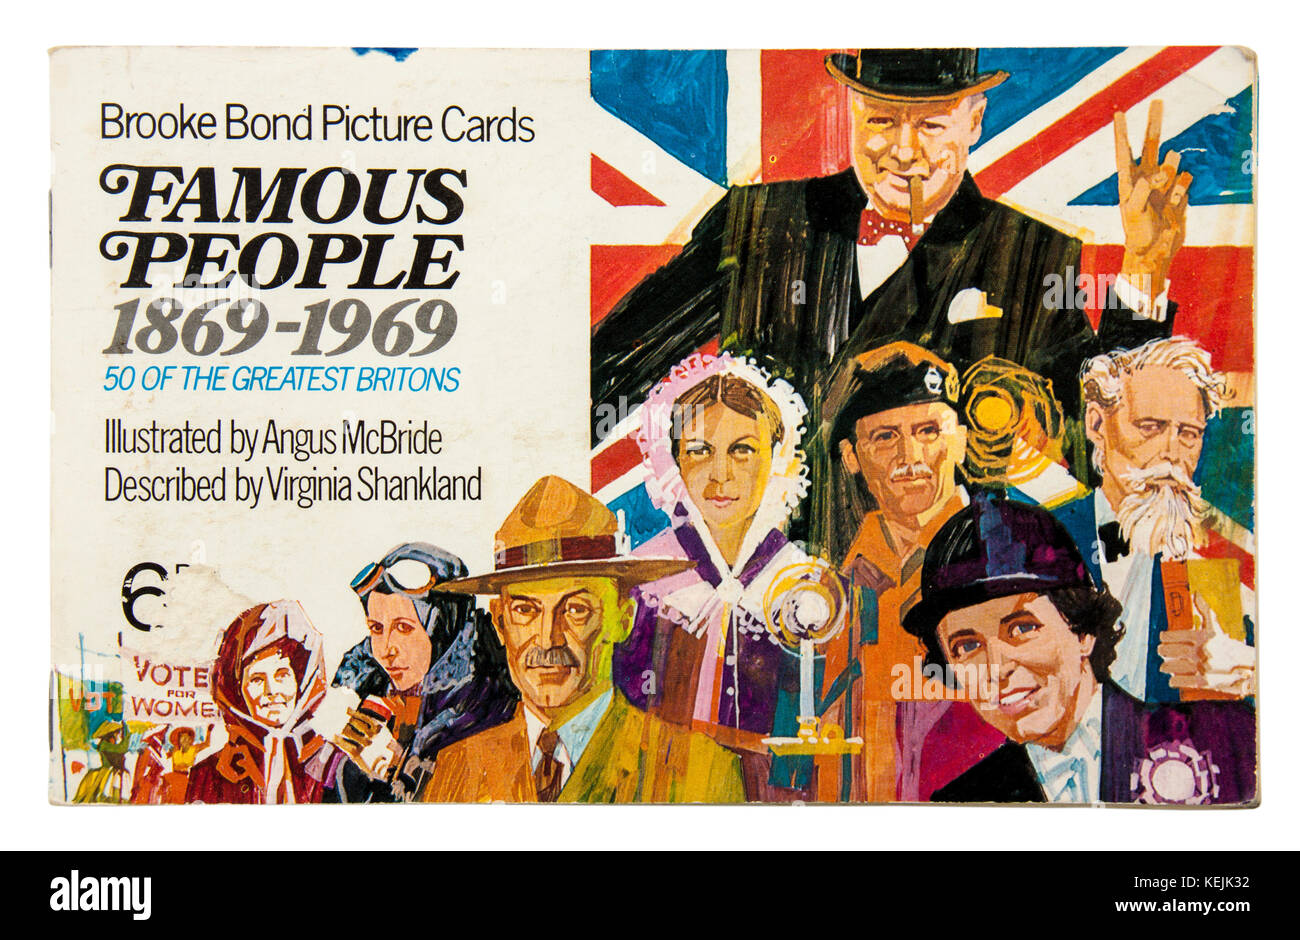 "Berühmte Personen 1869-1969 "Brooke album Bond Picture Cards, 1969 mit Illustrationen von Angus McBride veröffentlicht. Stockfoto